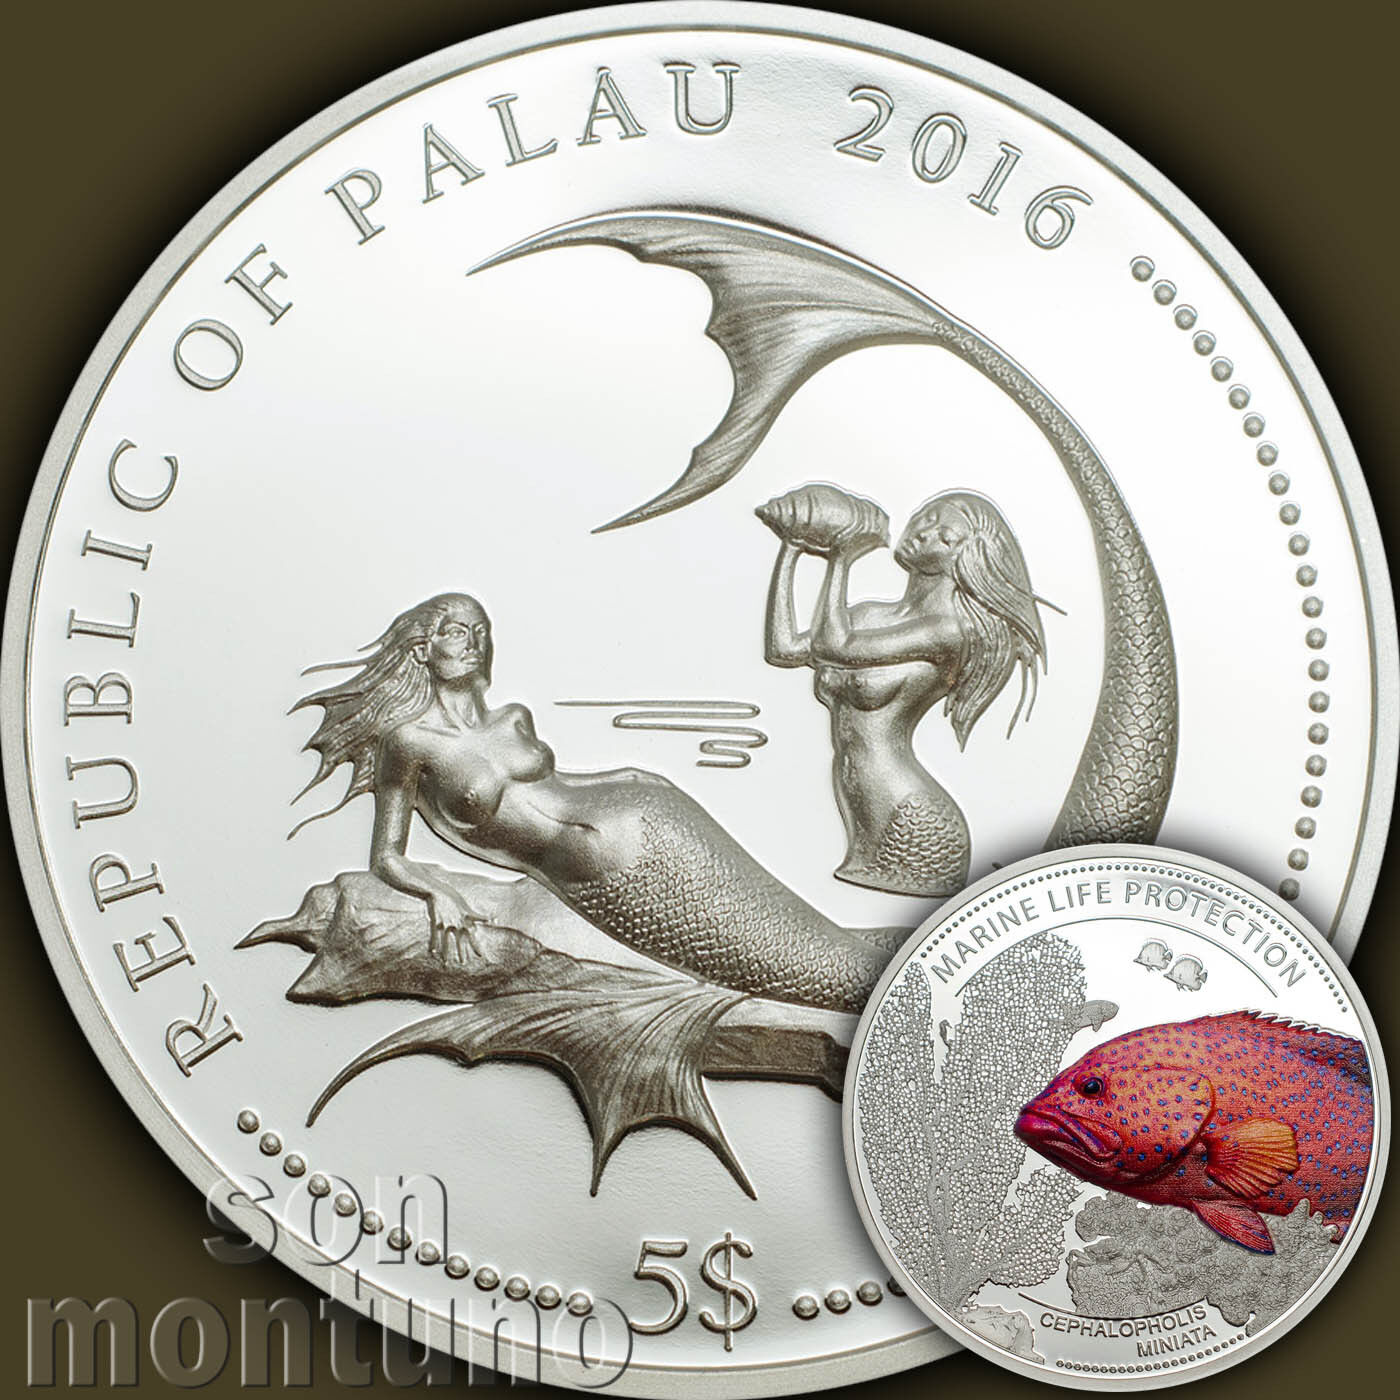 2016 Palau $5 - CORAL HIND FISH - Marine Life Protection SILVER Mermaid Coin